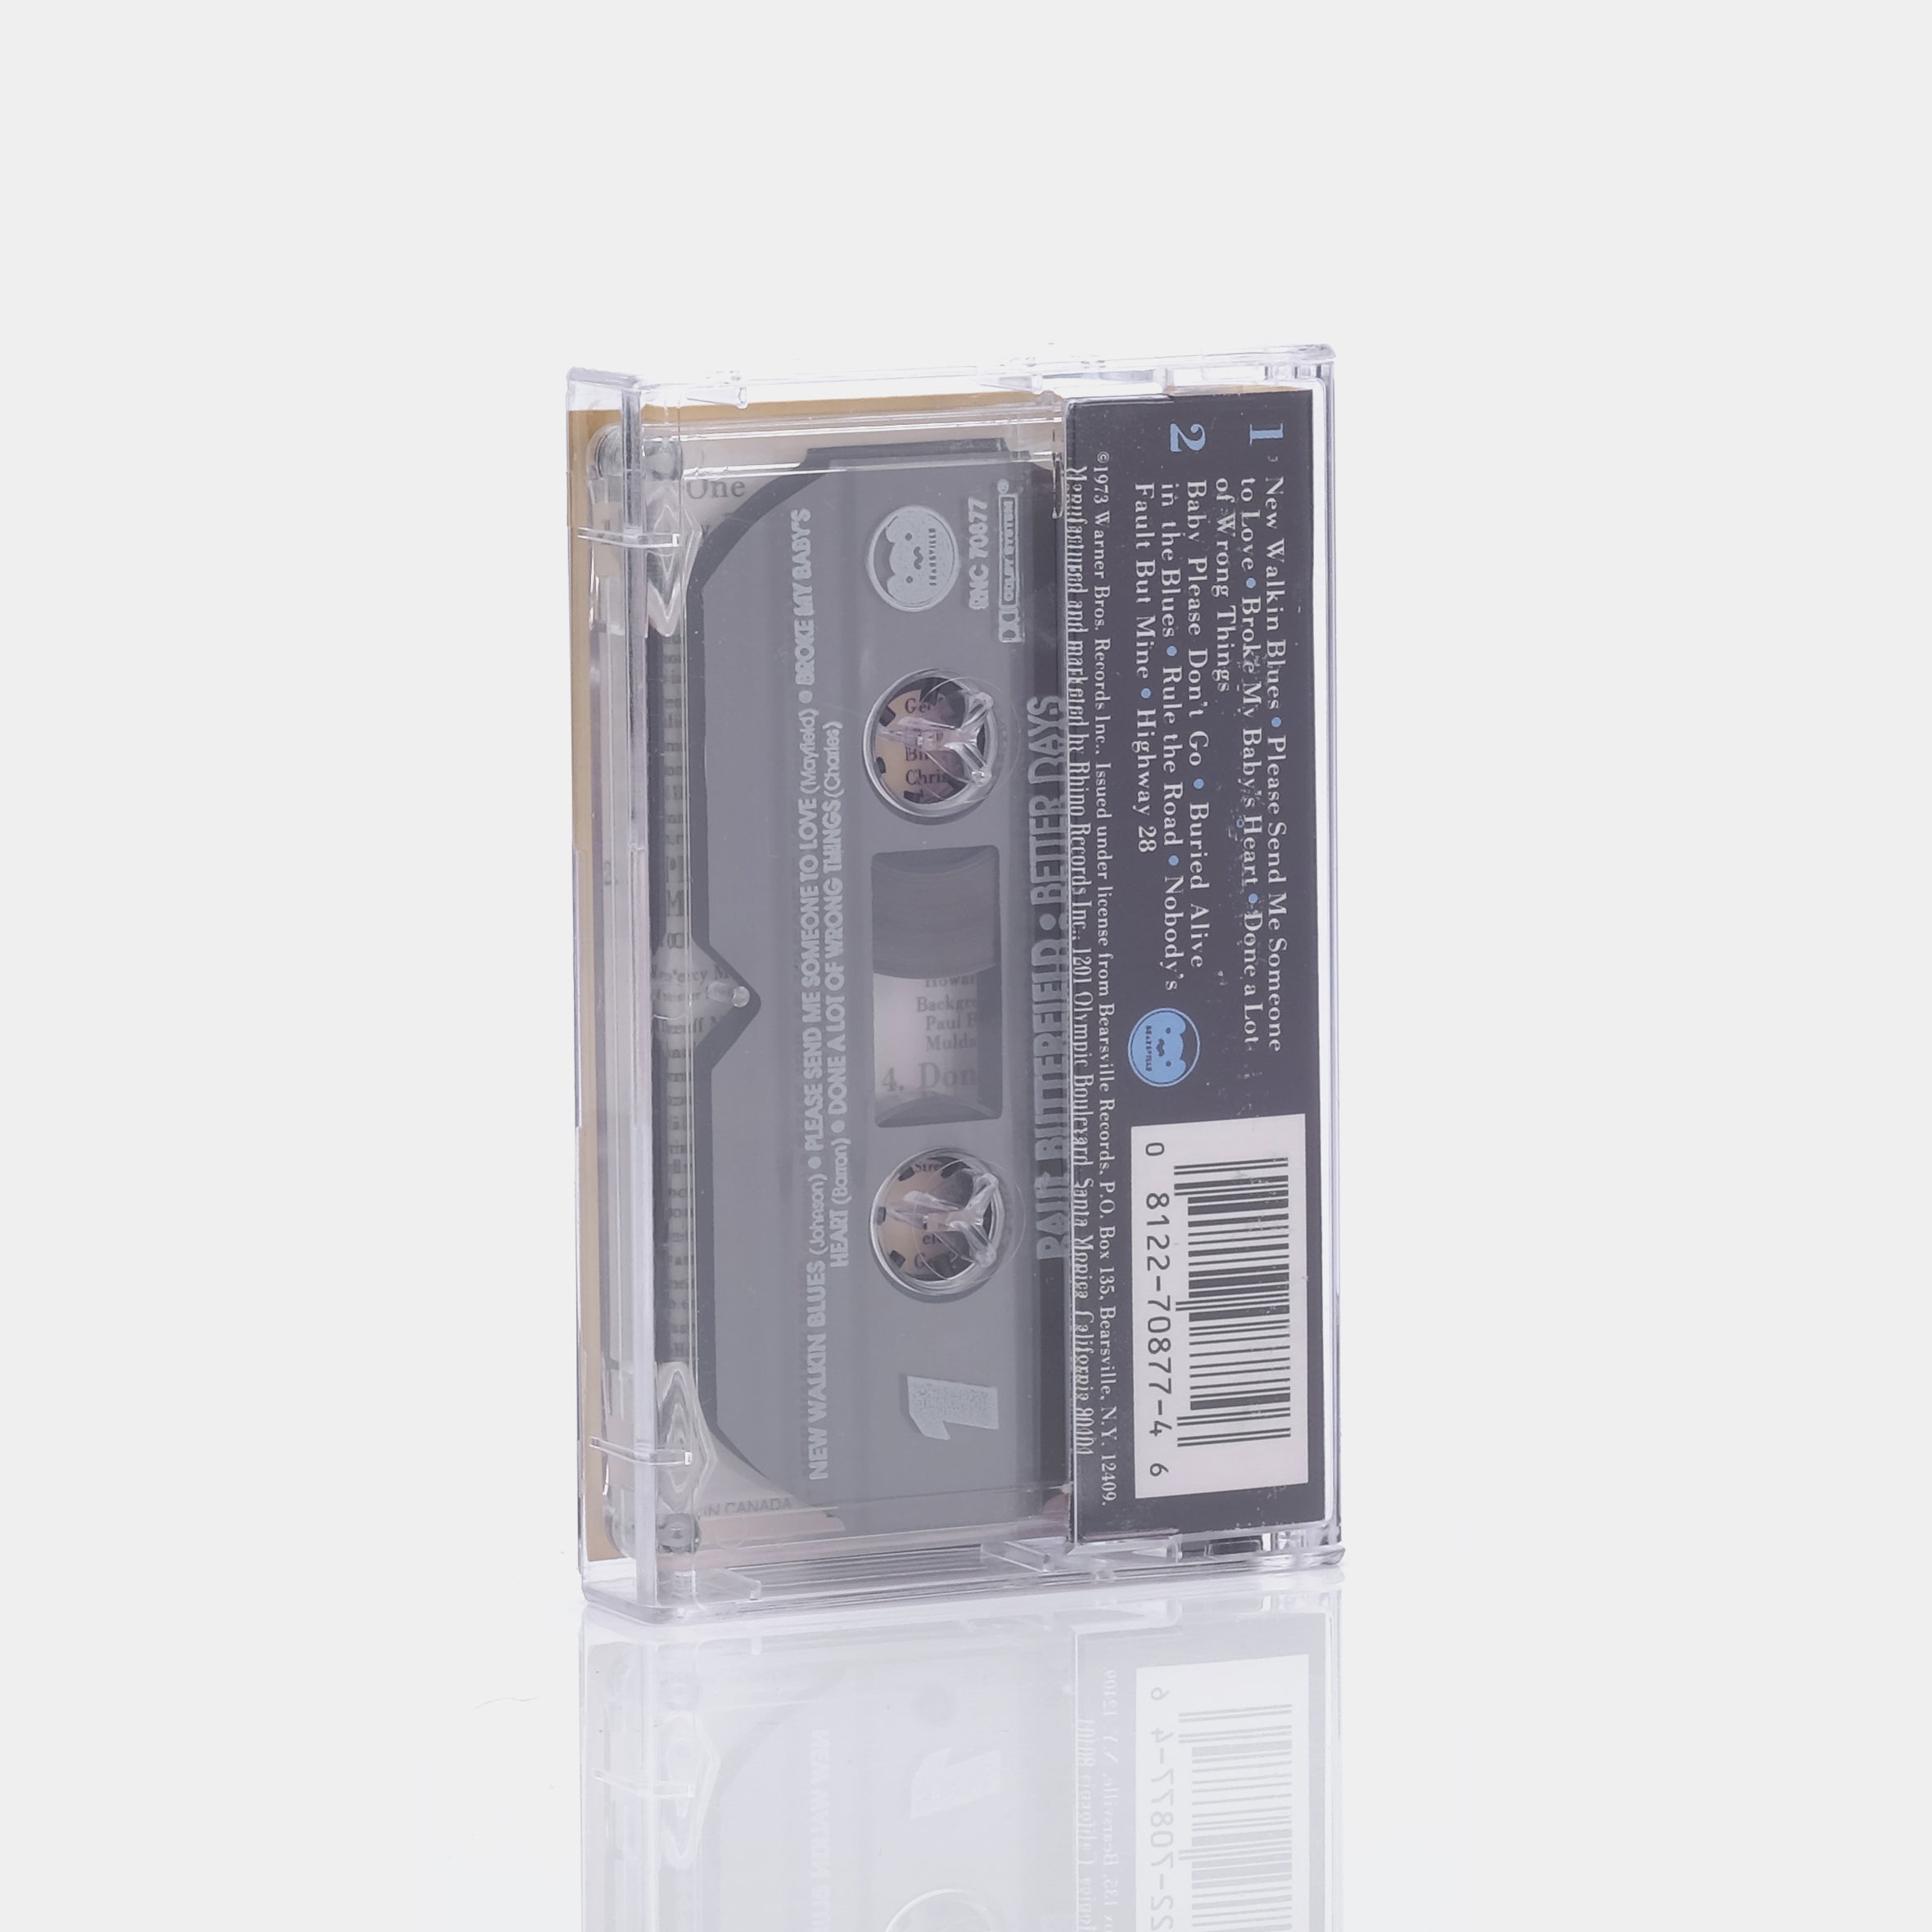 Paul Butterfield - Better Days Cassette Tape